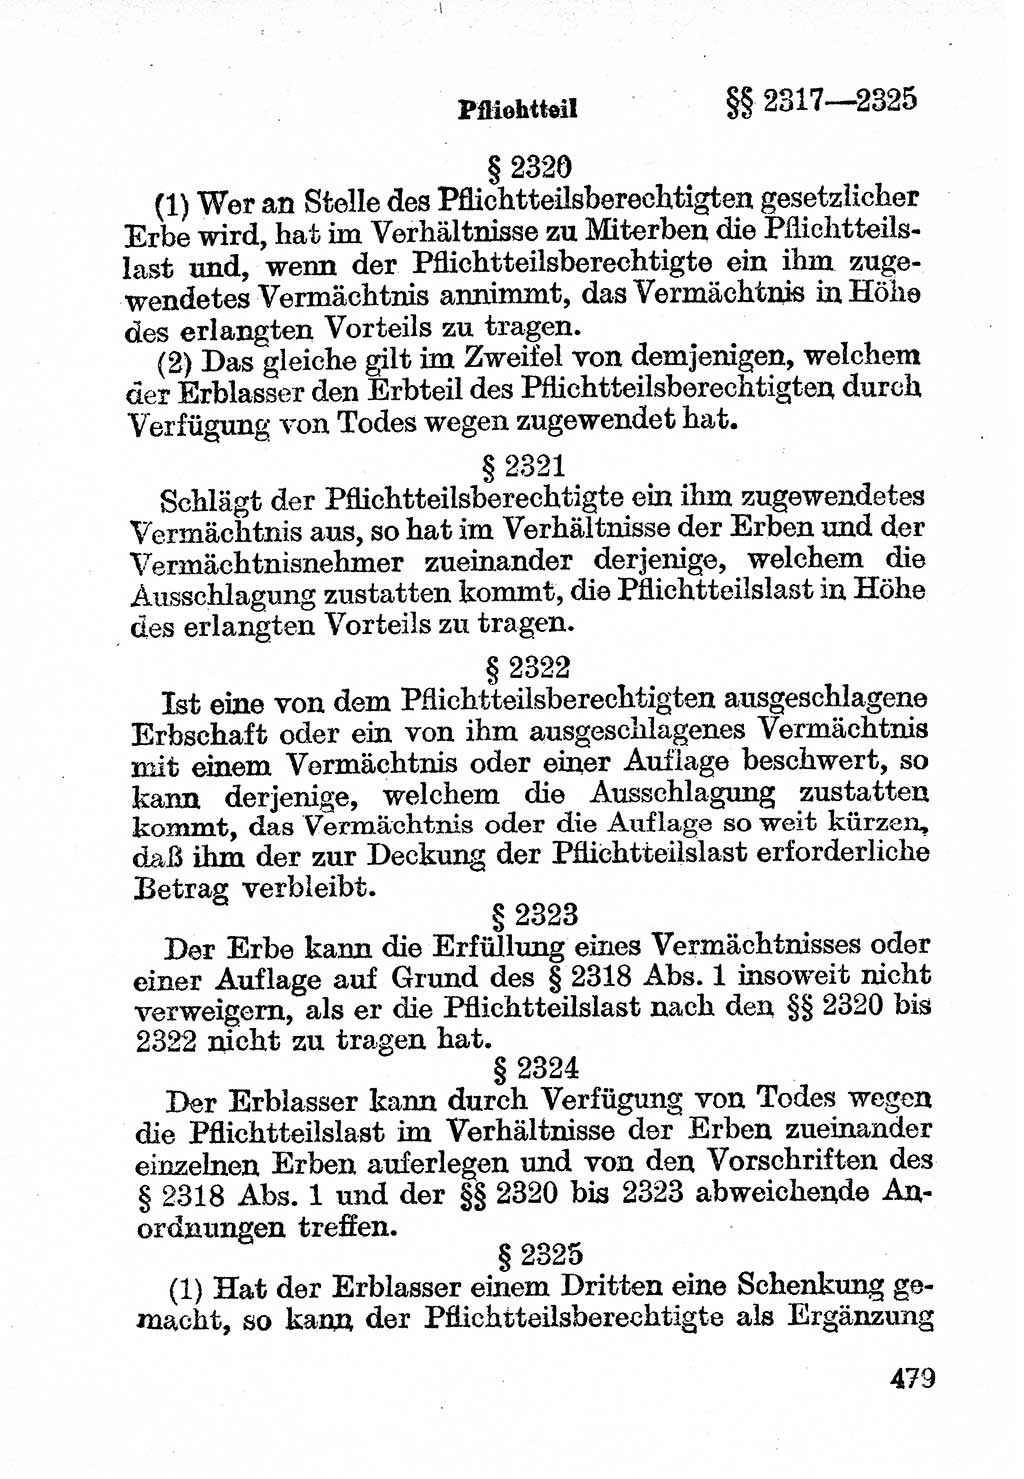 Bürgerliches Gesetzbuch (BGB) nebst wichtigen Nebengesetzen [Deutsche Demokratische Republik (DDR)] 1956, Seite 479 (BGB Nebenges. DDR 1956, S. 479)